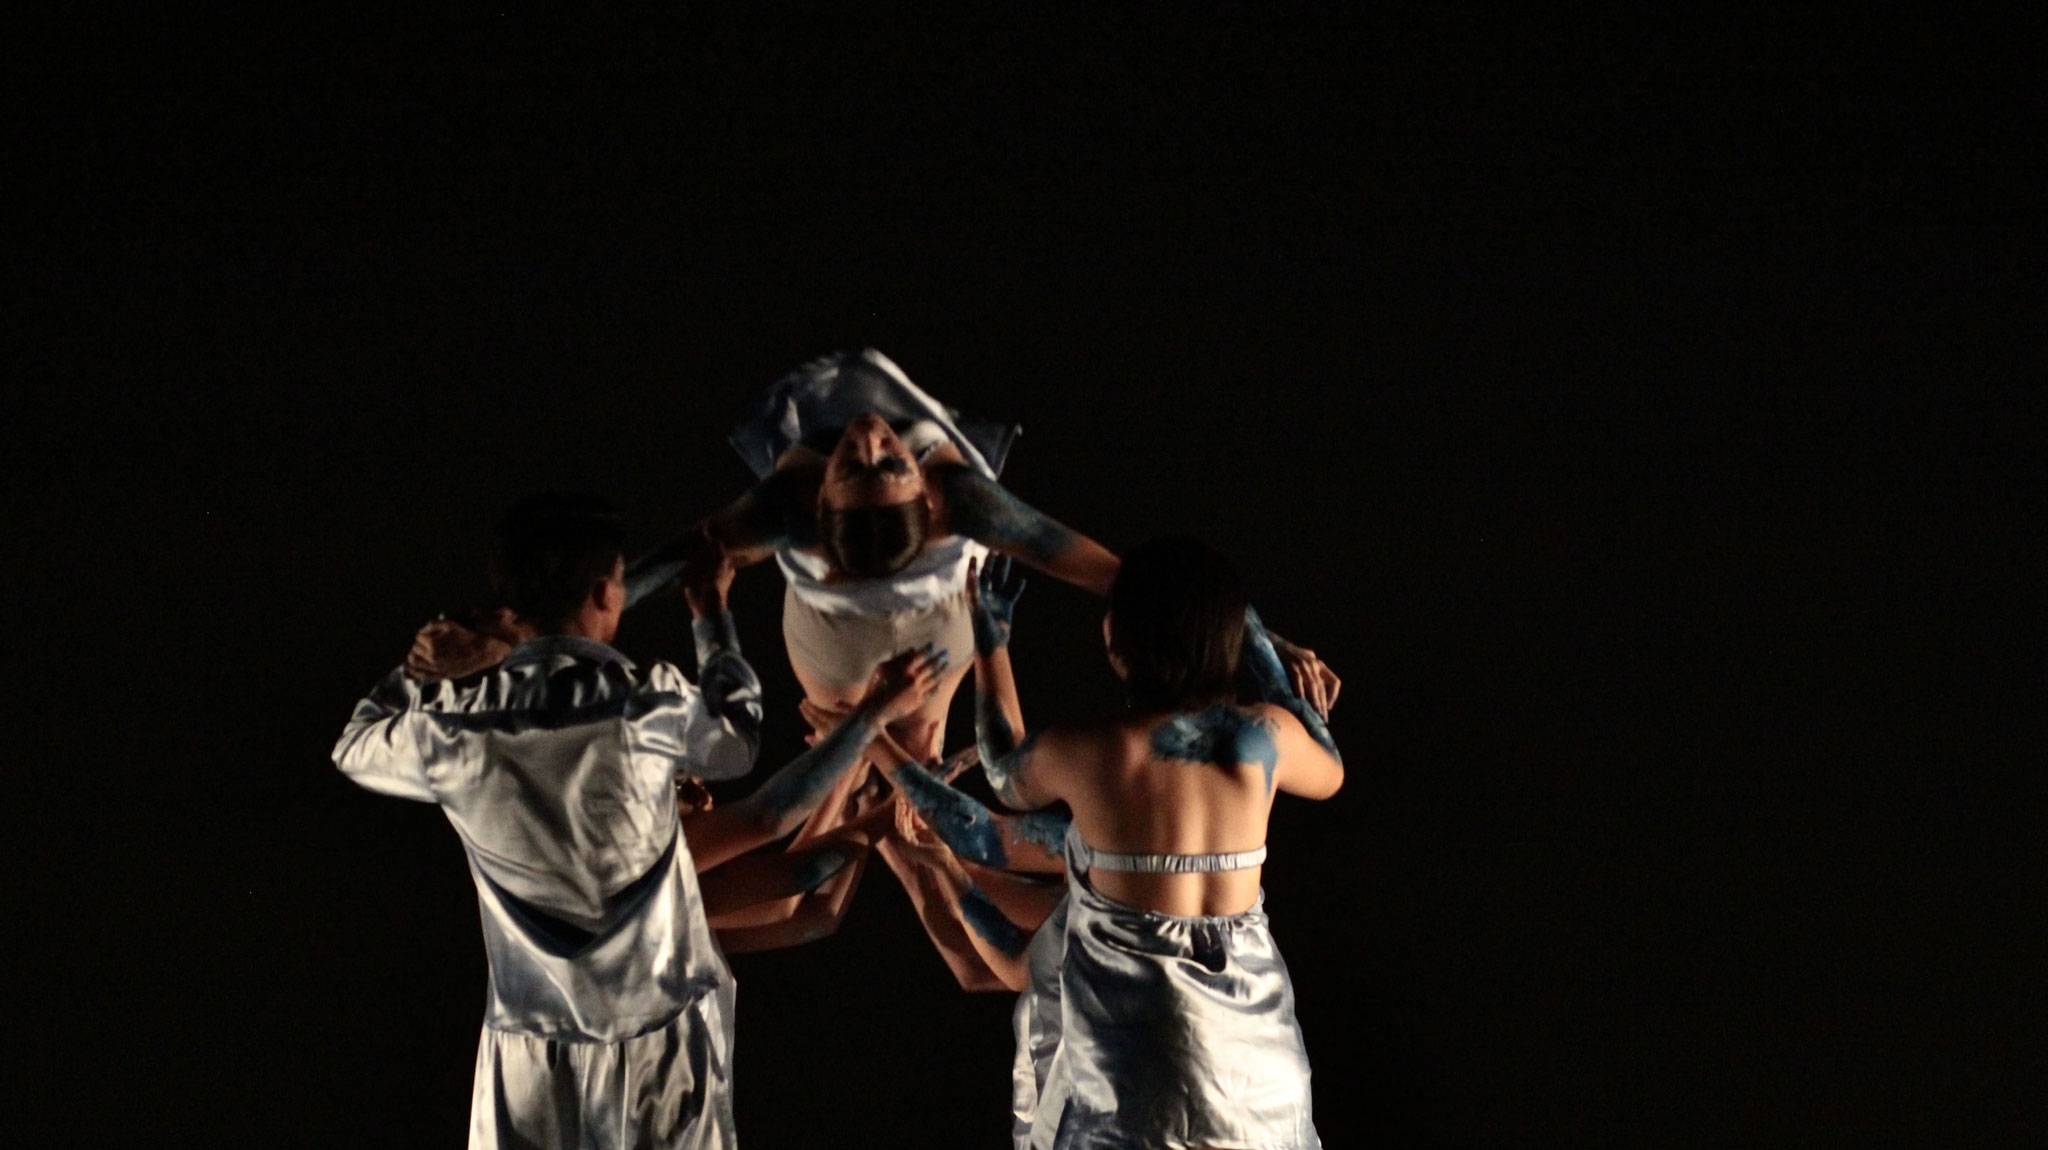 Presentación de danza "Mortel". Estudiantes de 6.° semestre de Bachillerato en Artes y Humanidades en Danza